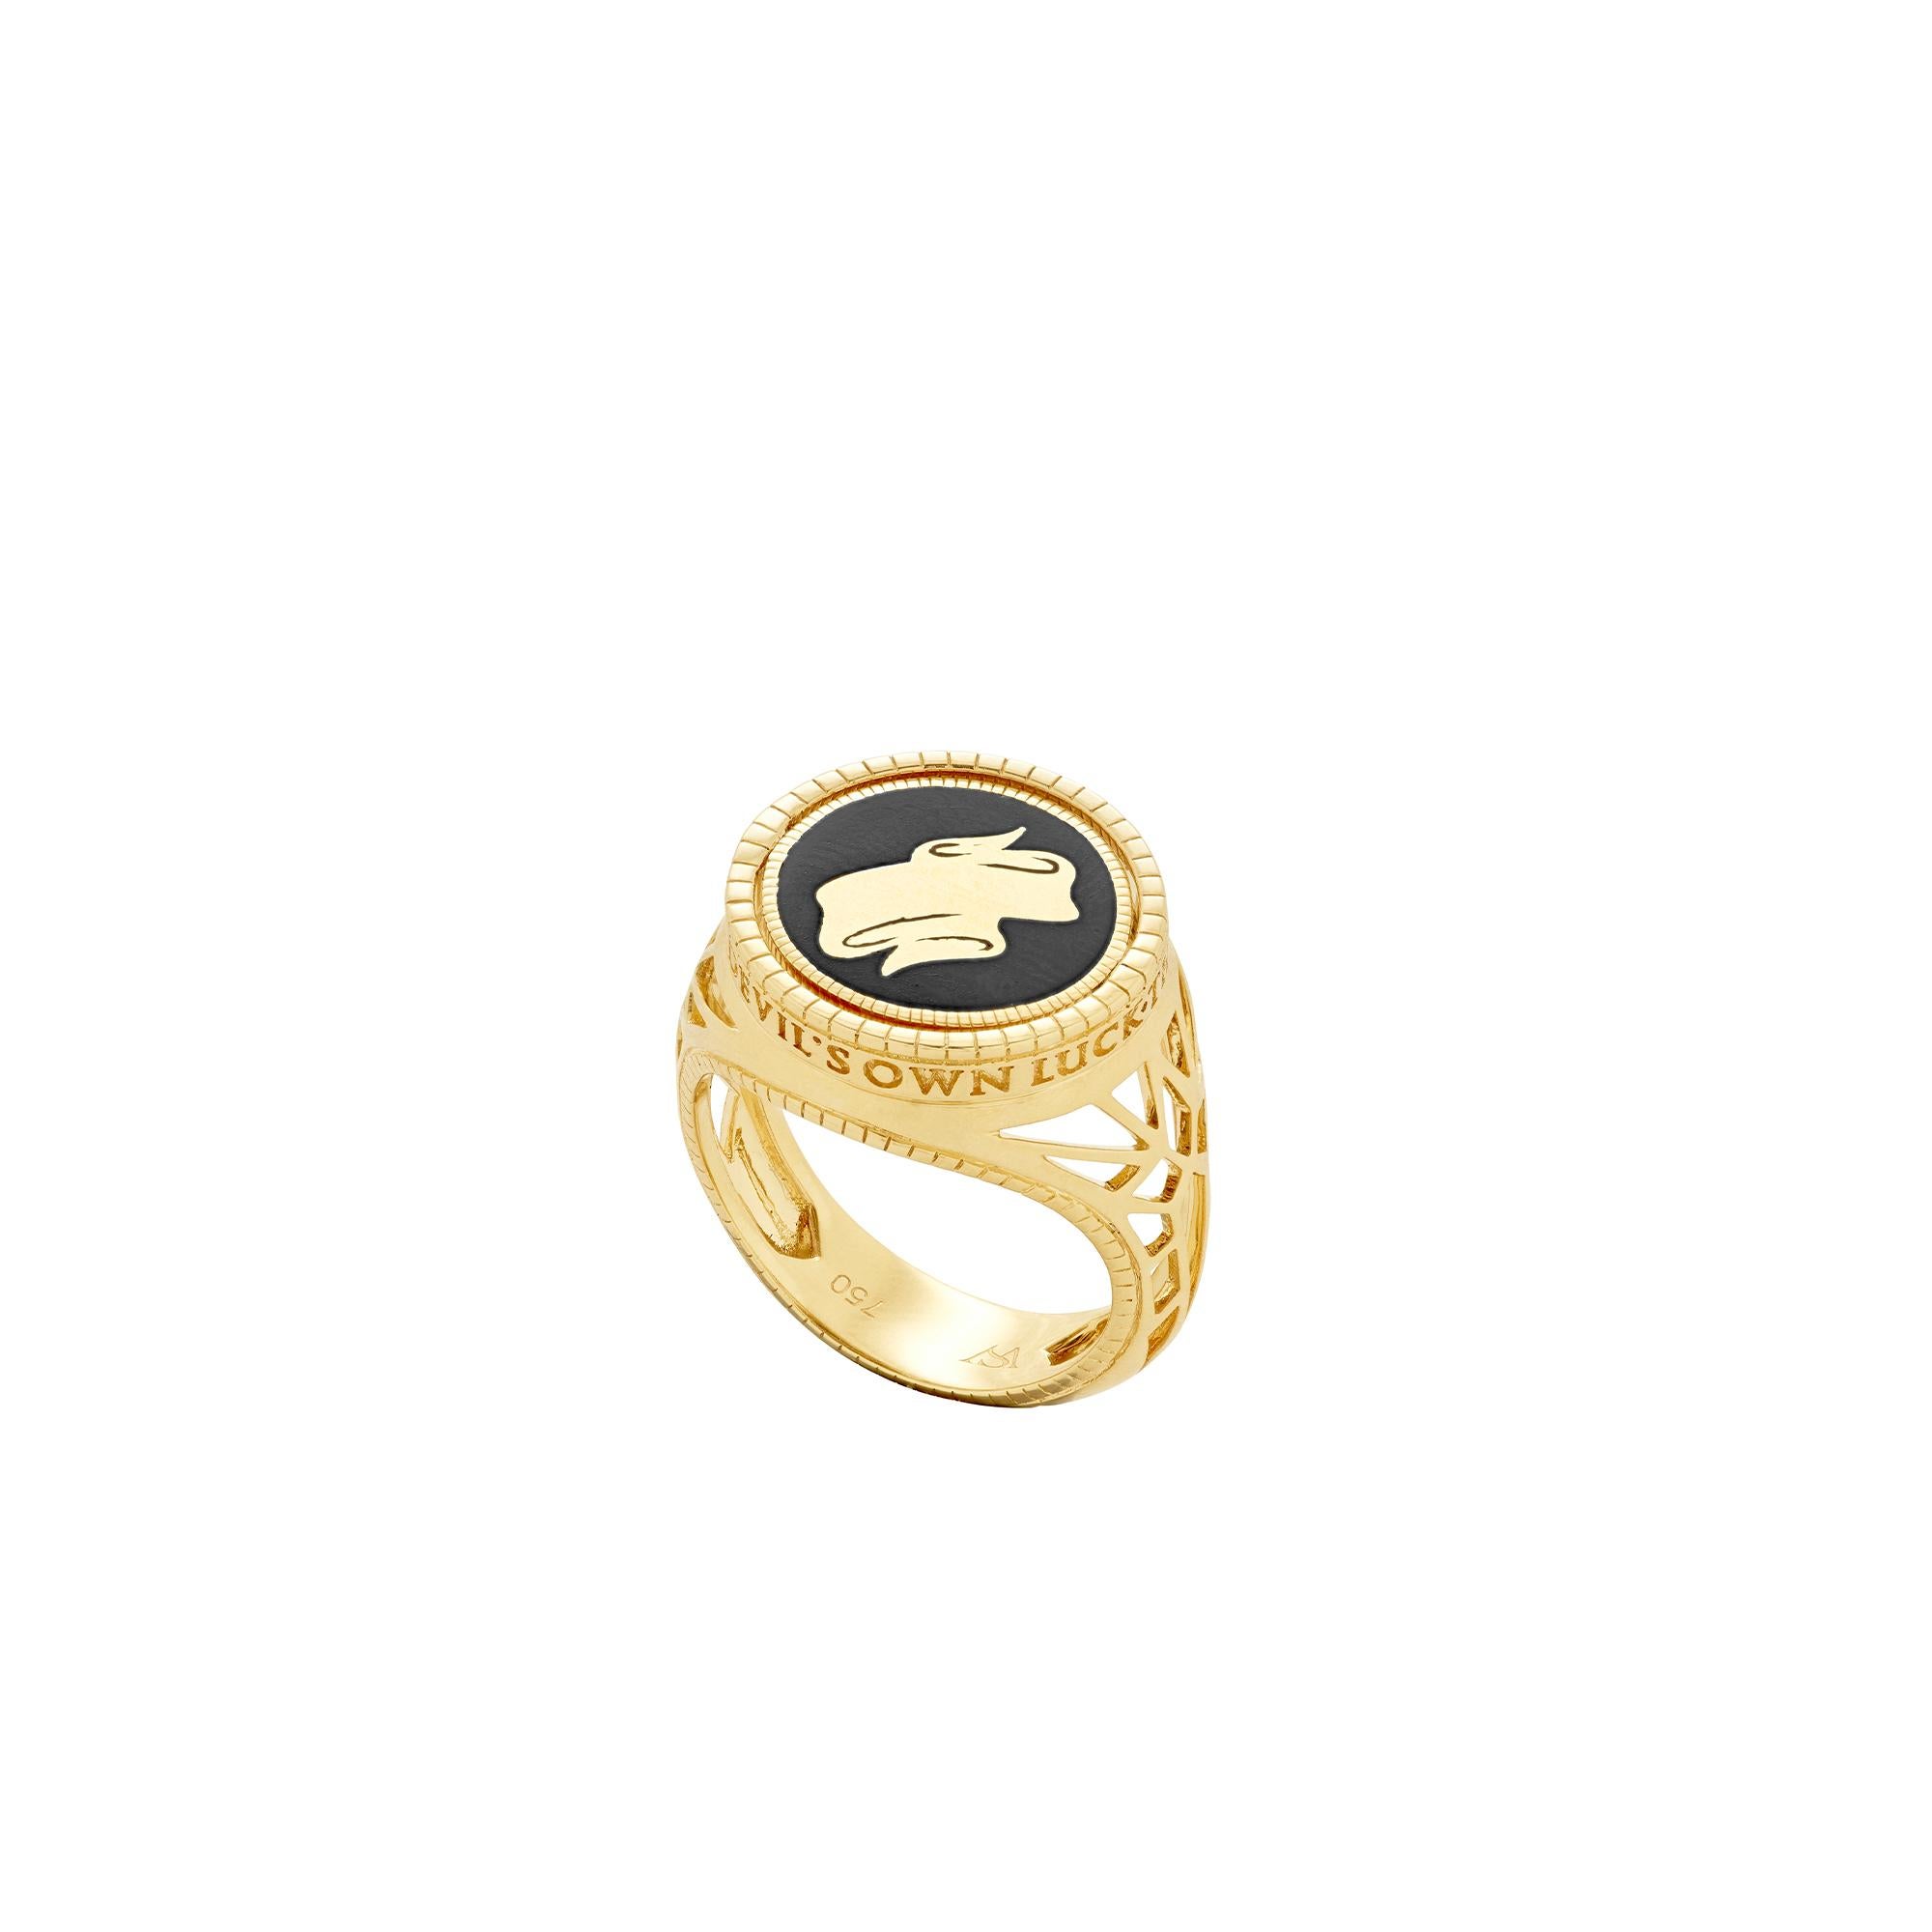 Stephen Webster Flipside Sovereign 18 Carat Gold and Black Enamel Pinky Ring 2